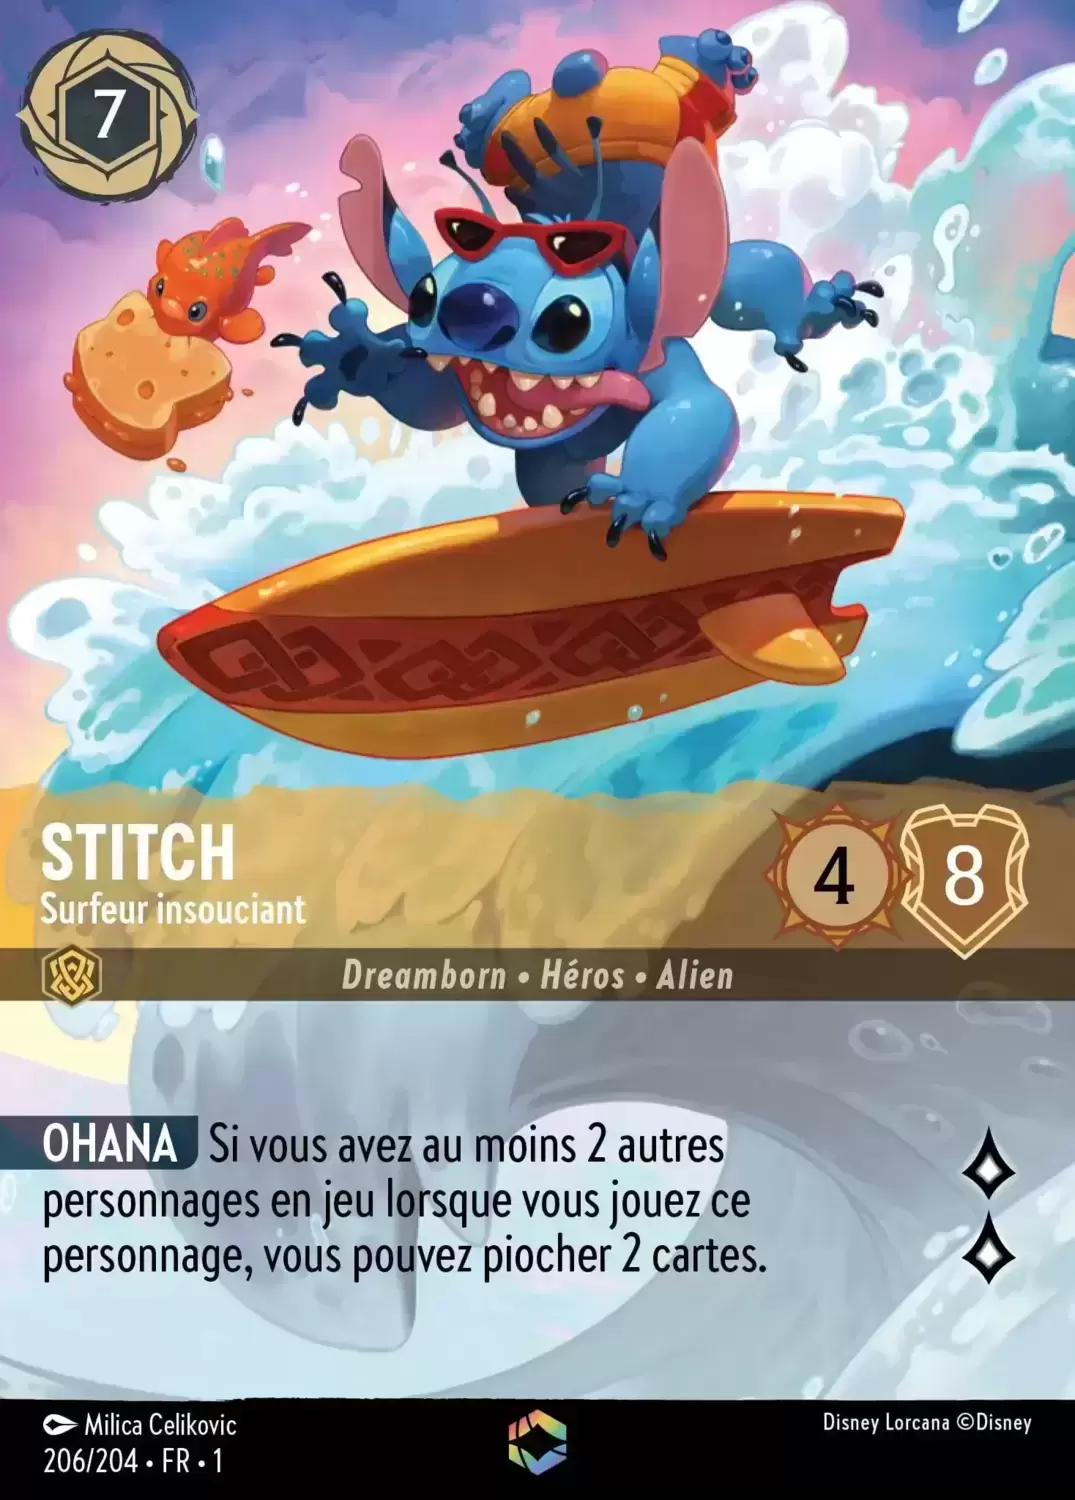 Premier chapitre - Stitch - Carefree Surfer